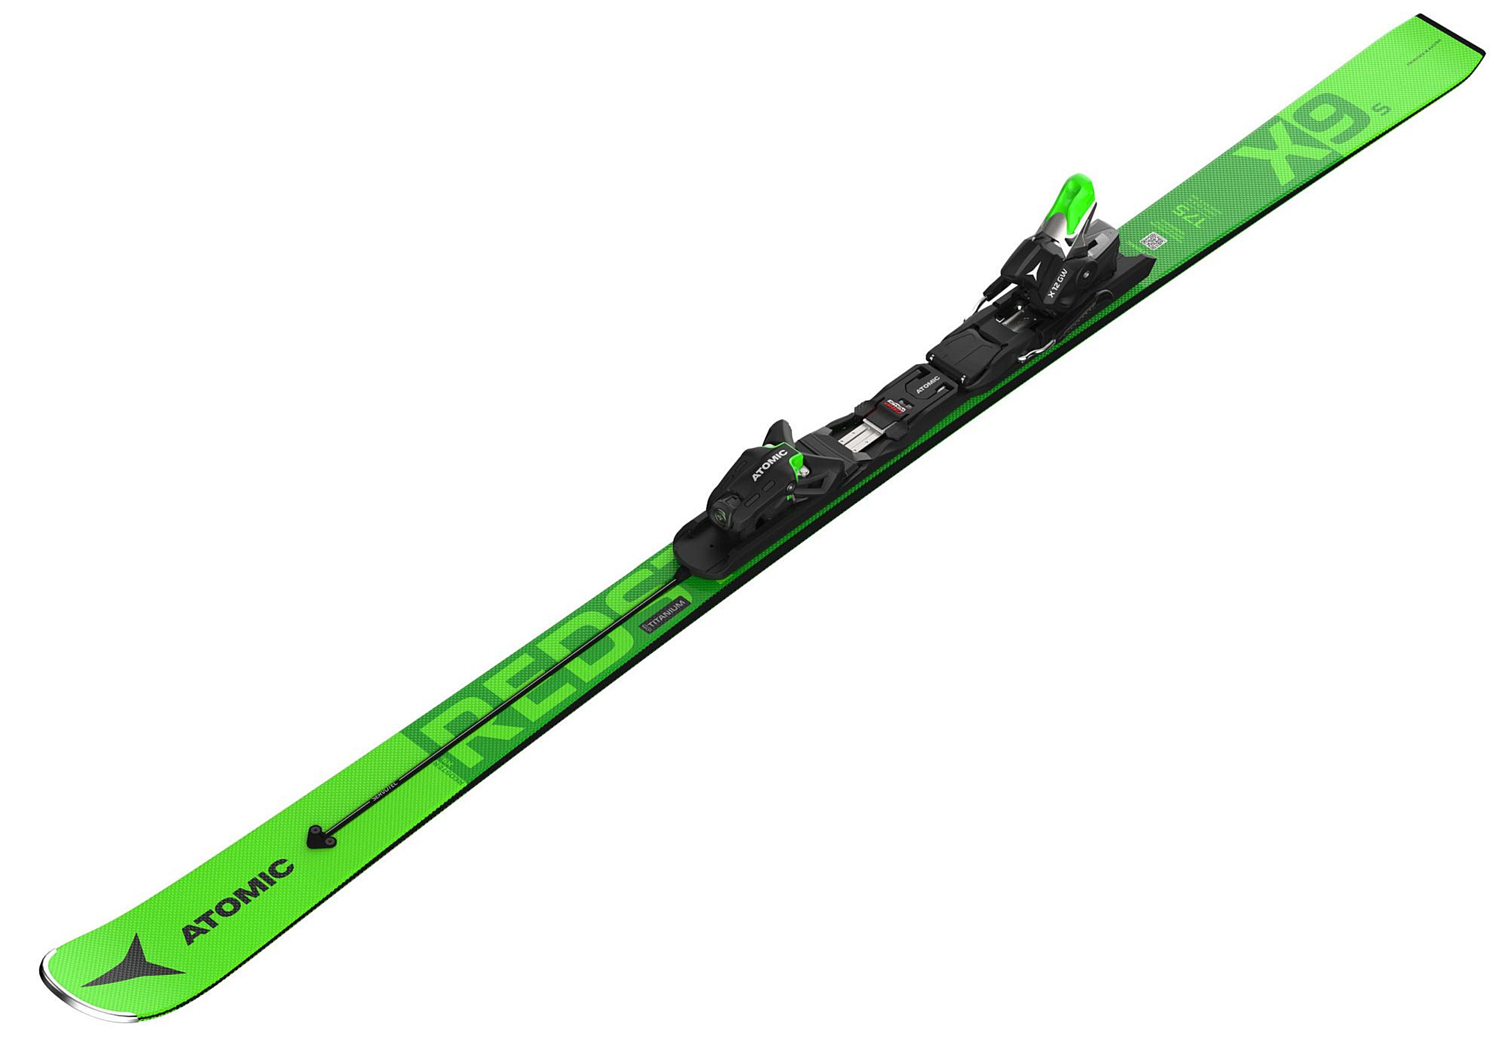 Горные лыжи с креплениями ATOMIC 2020-21 REDSTER X9 S + X 12 GW Black/Green